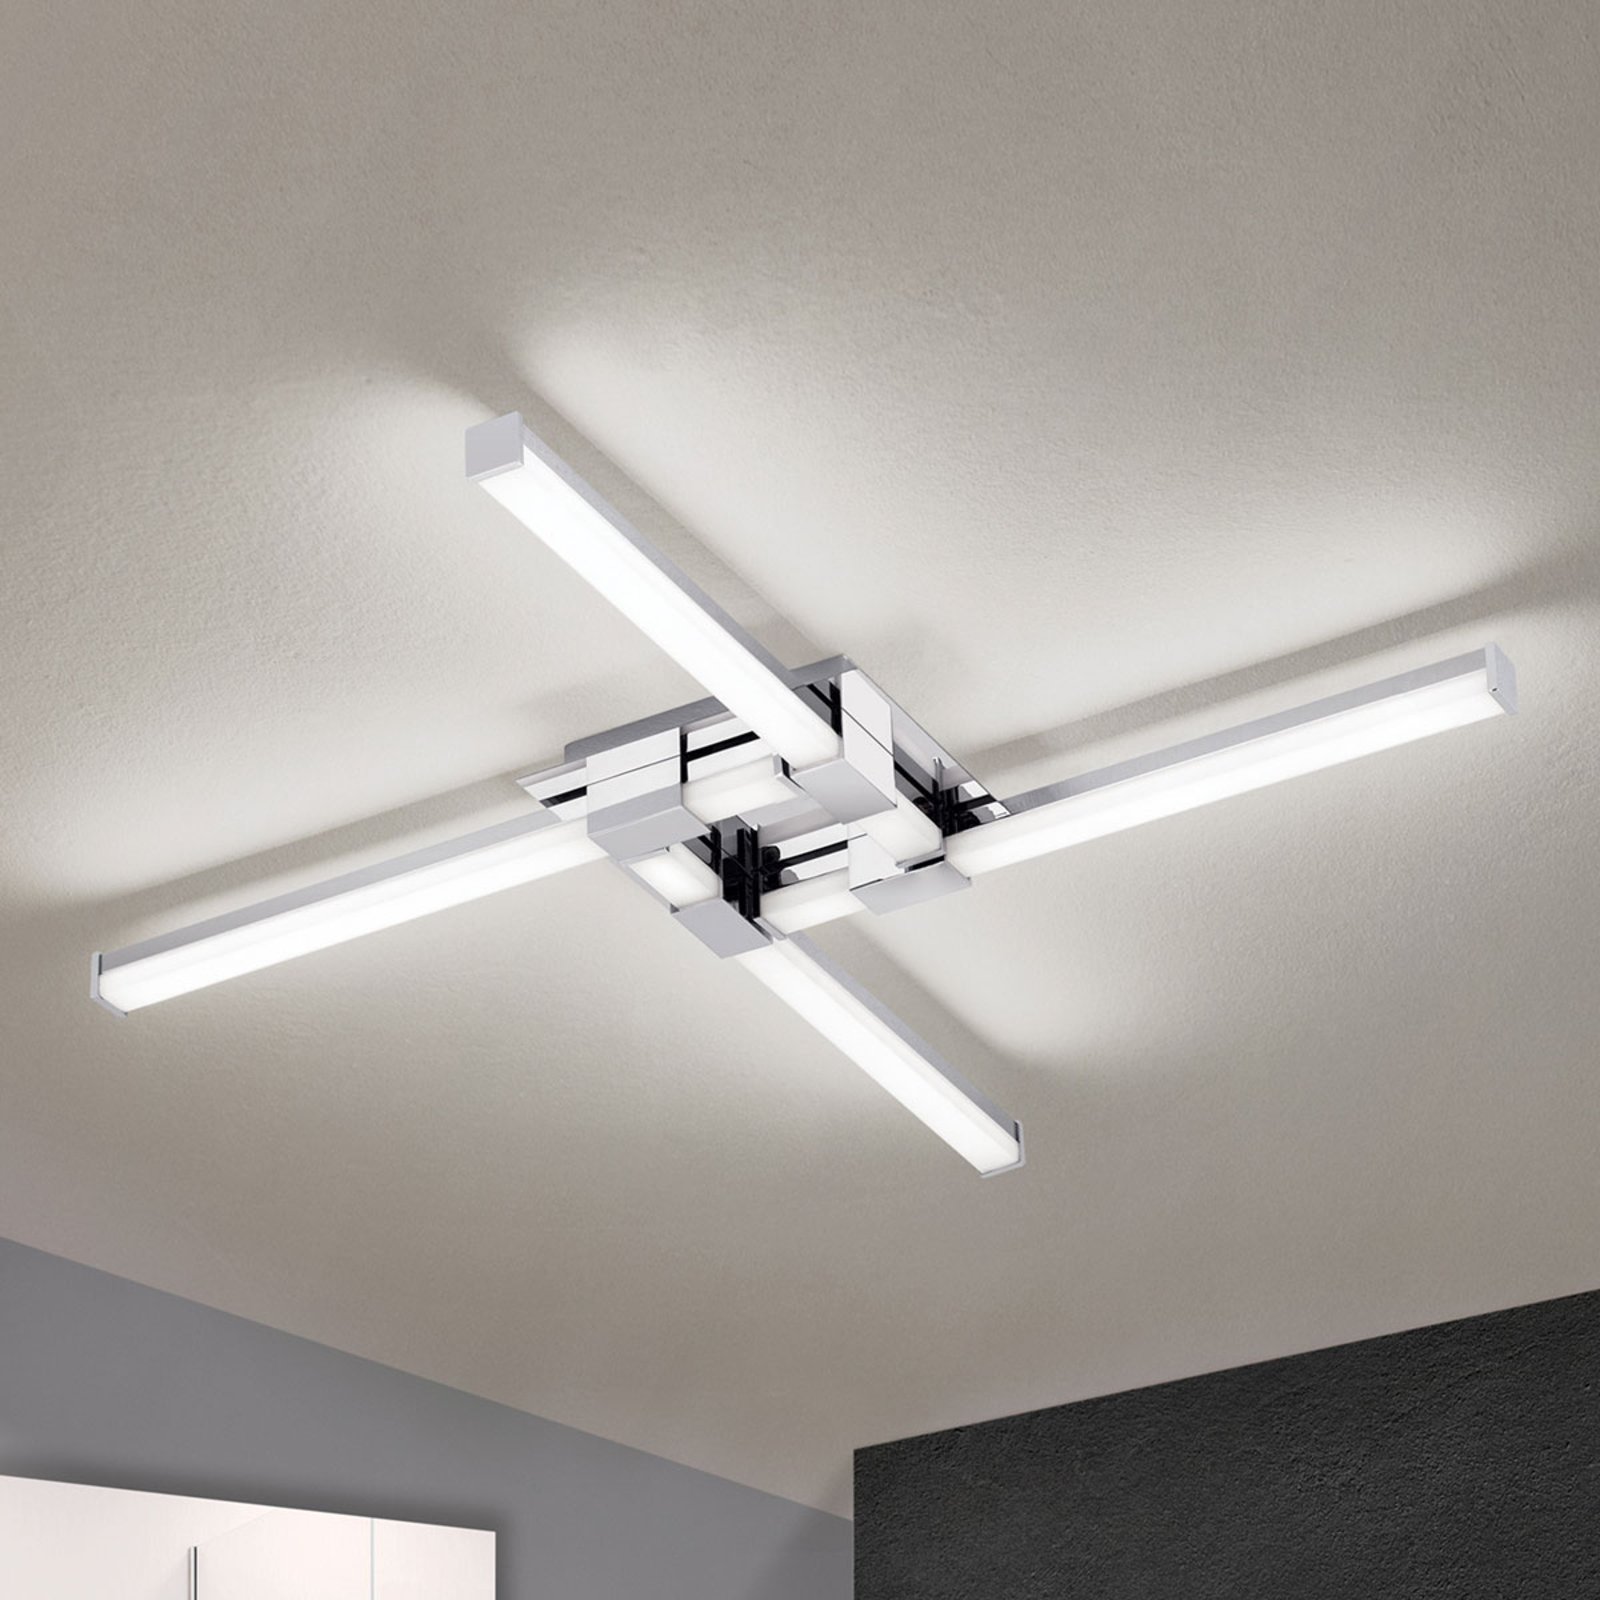 Four-bulb Argo LED bathroom ceiling light